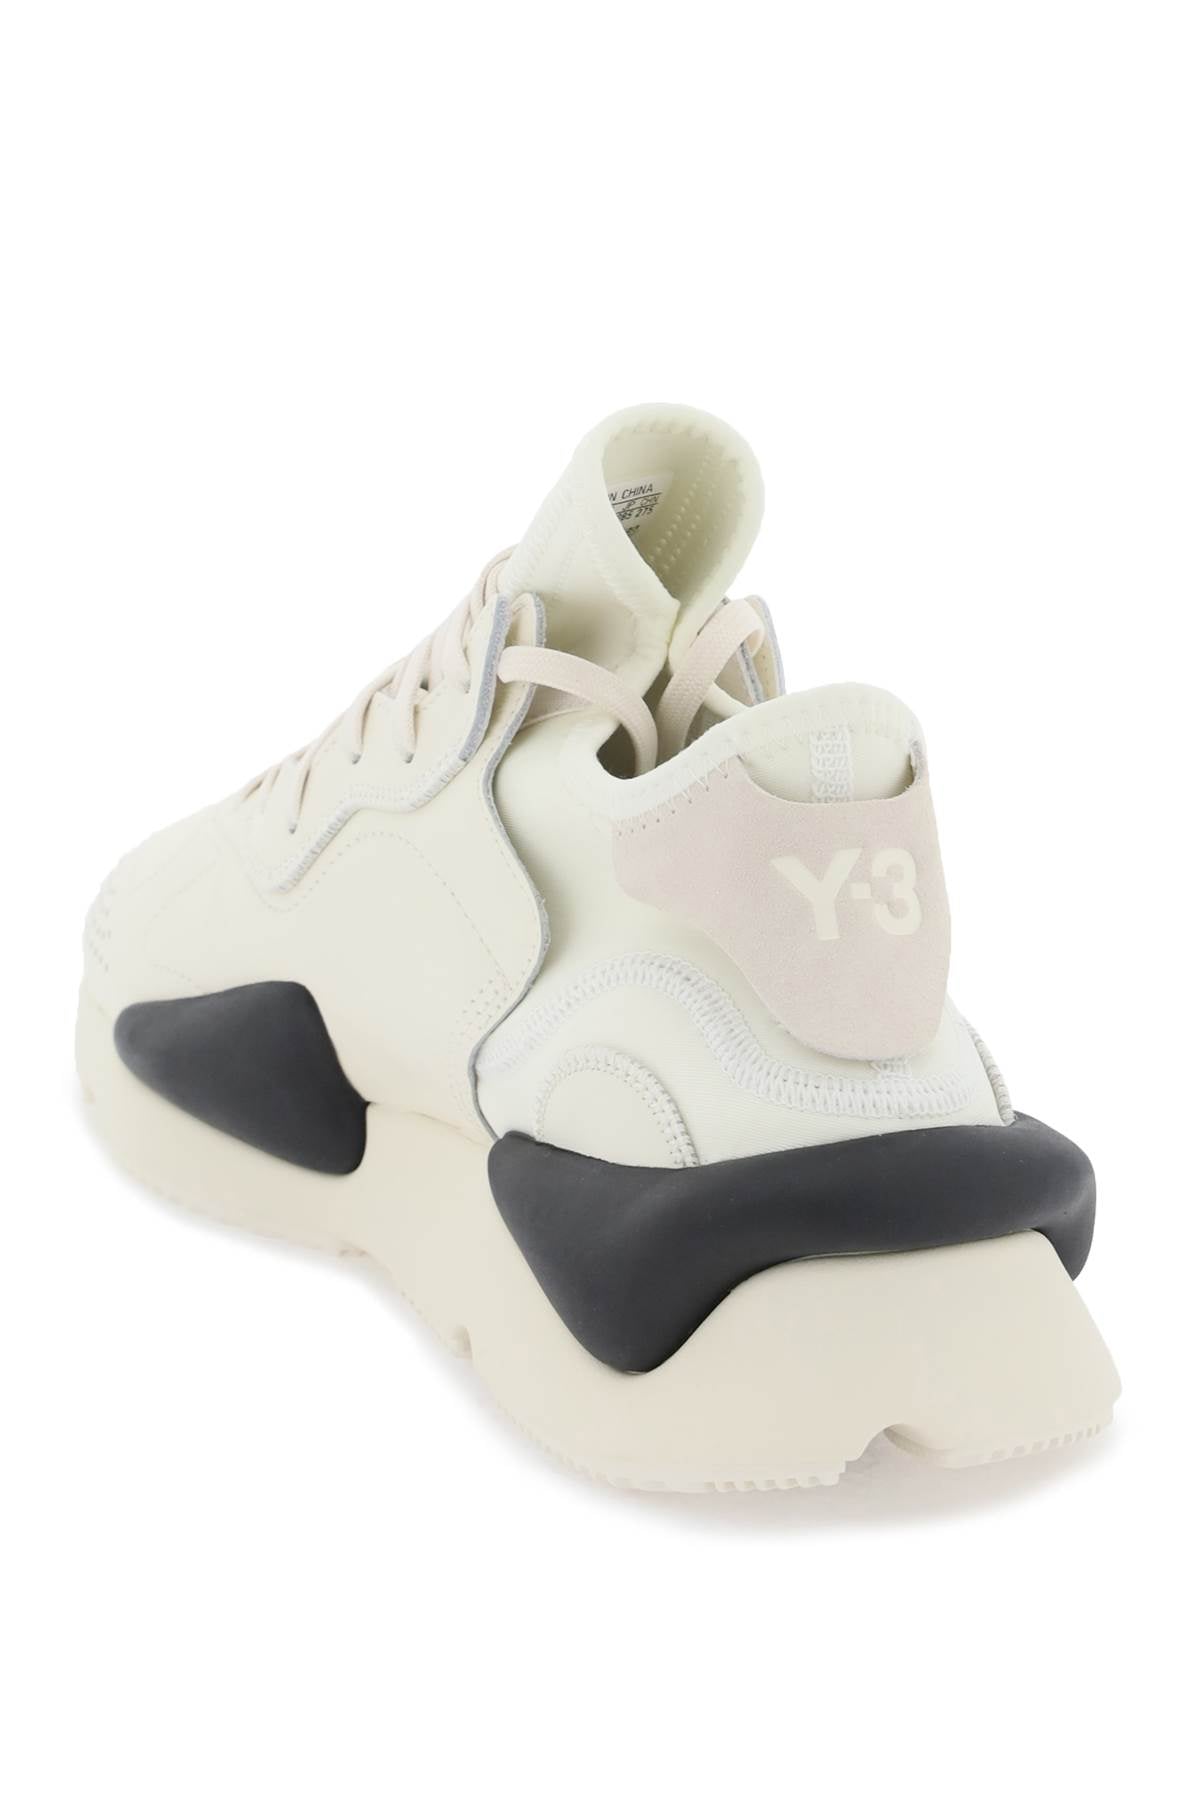 Y-3 y-3 kaiwa sneakers-2